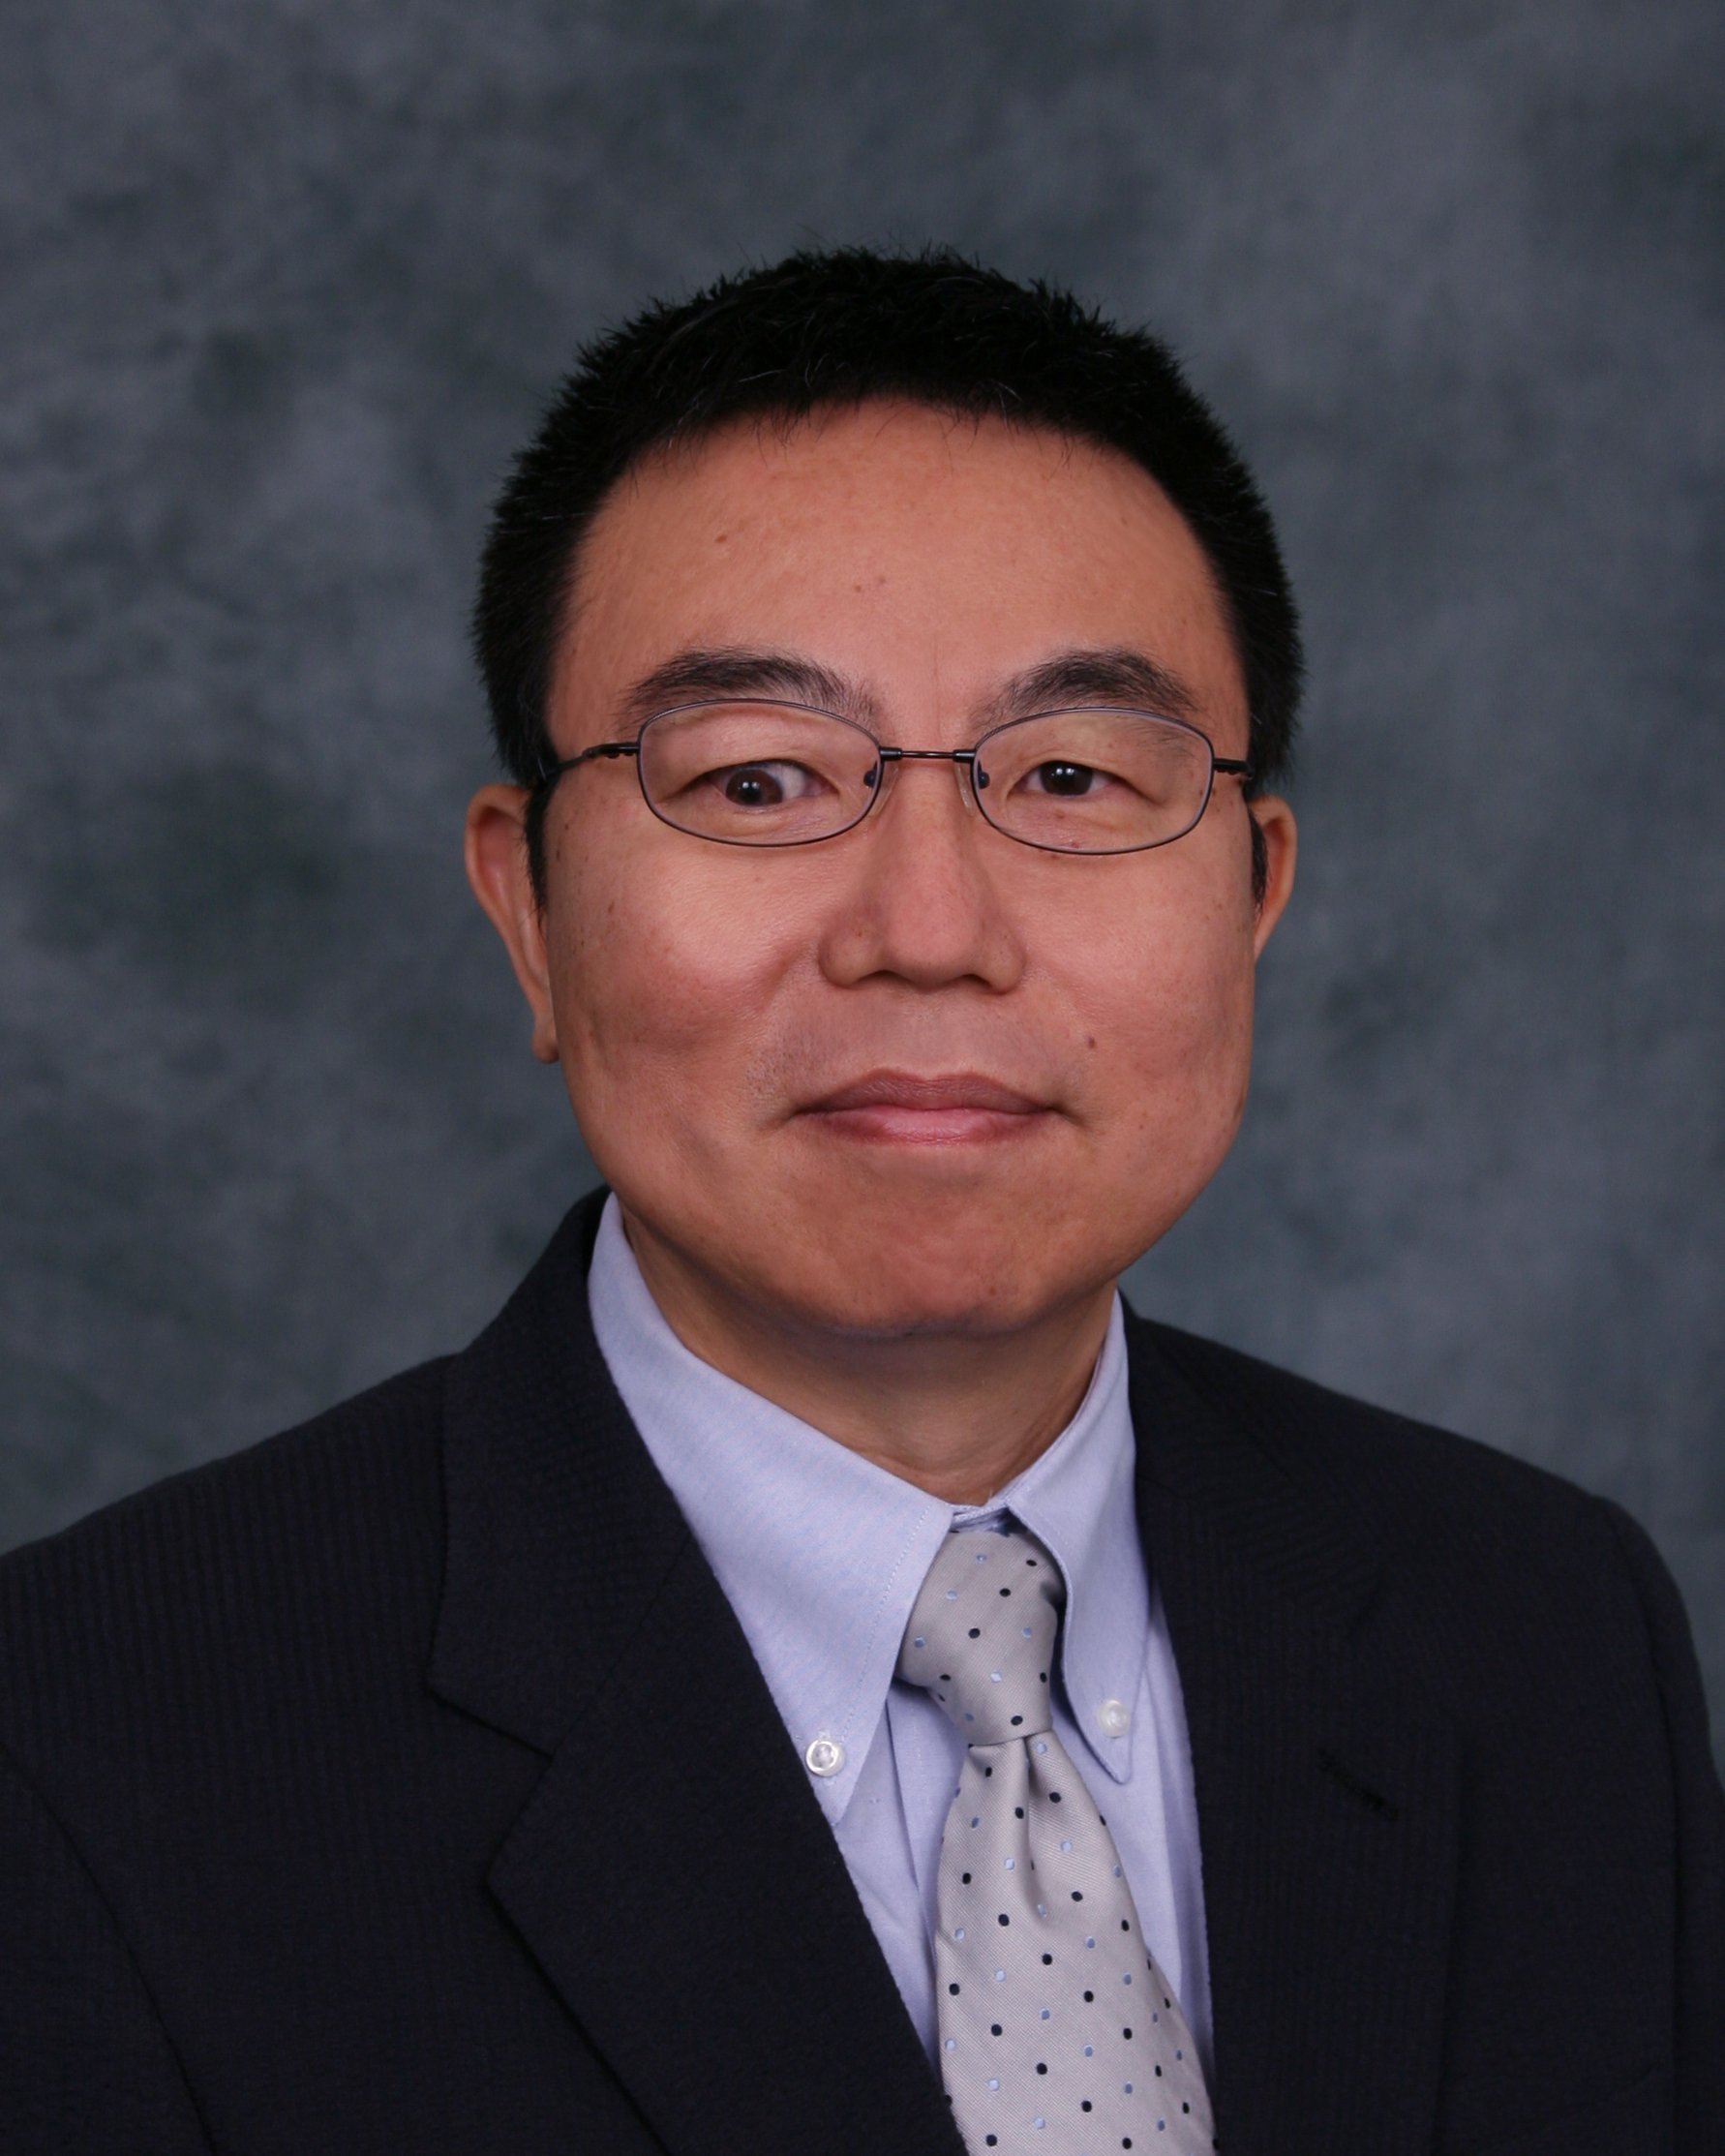 Wanzhu Tu, PhD